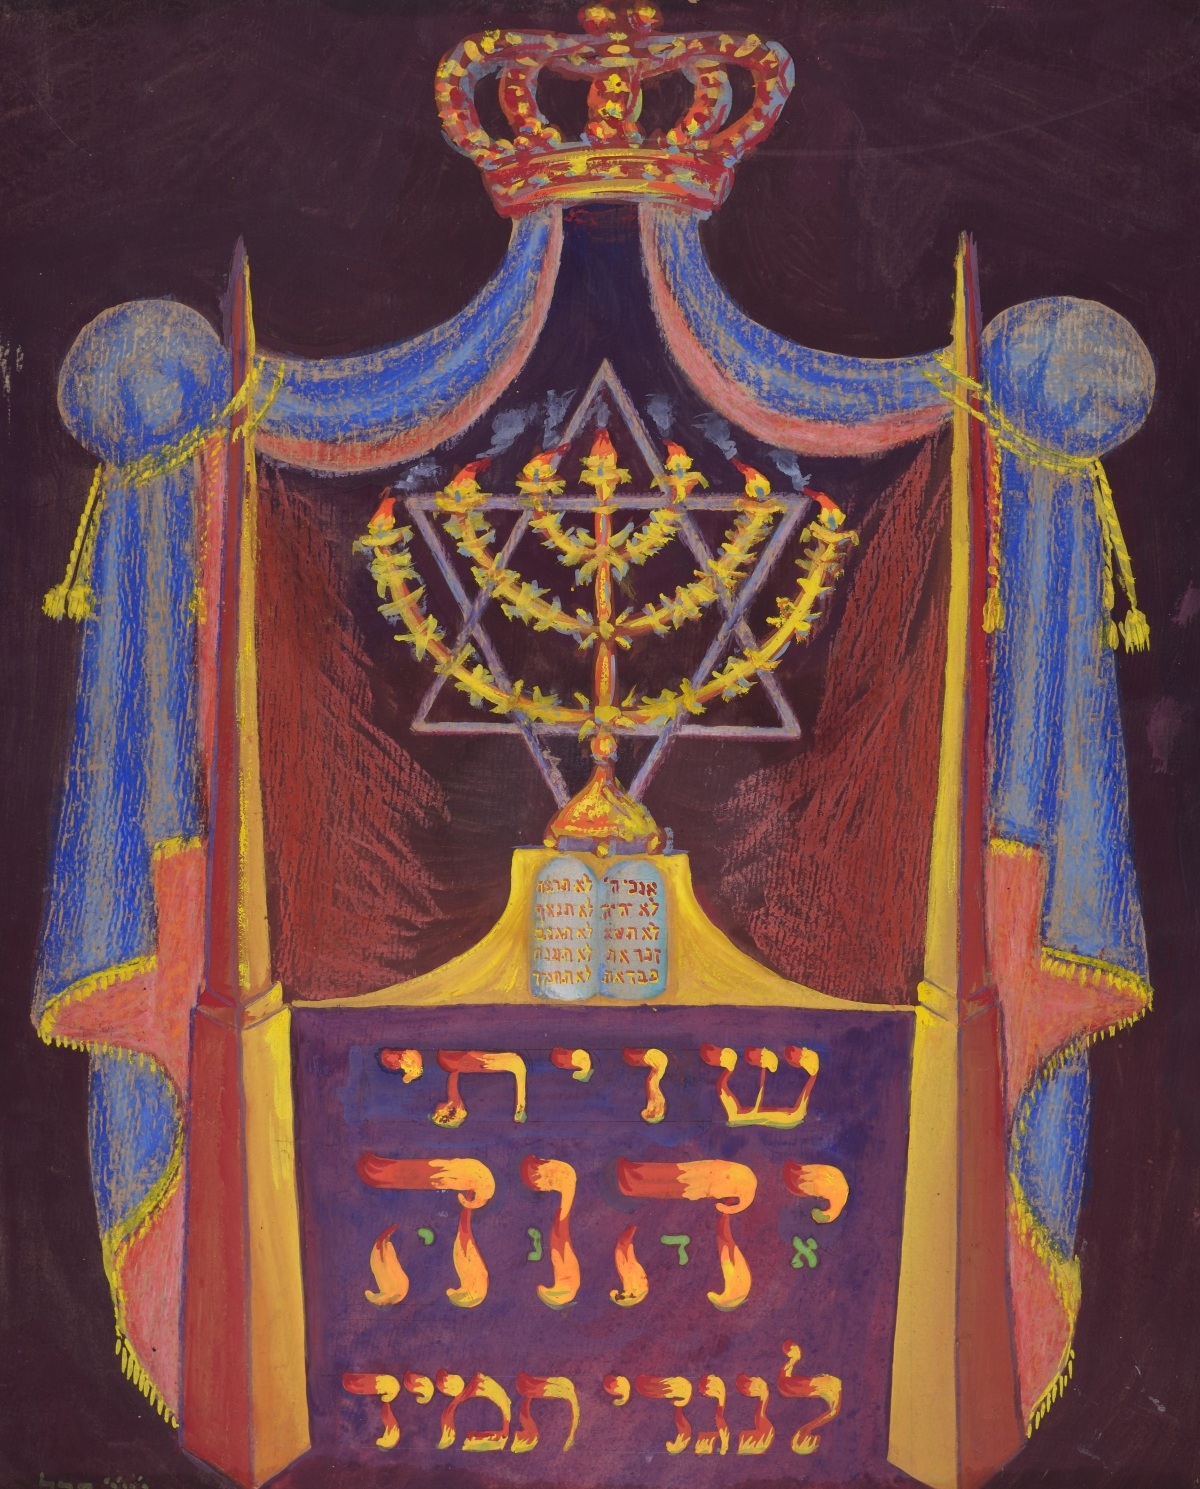 Moshe Perl's "Shiviti" Plaque